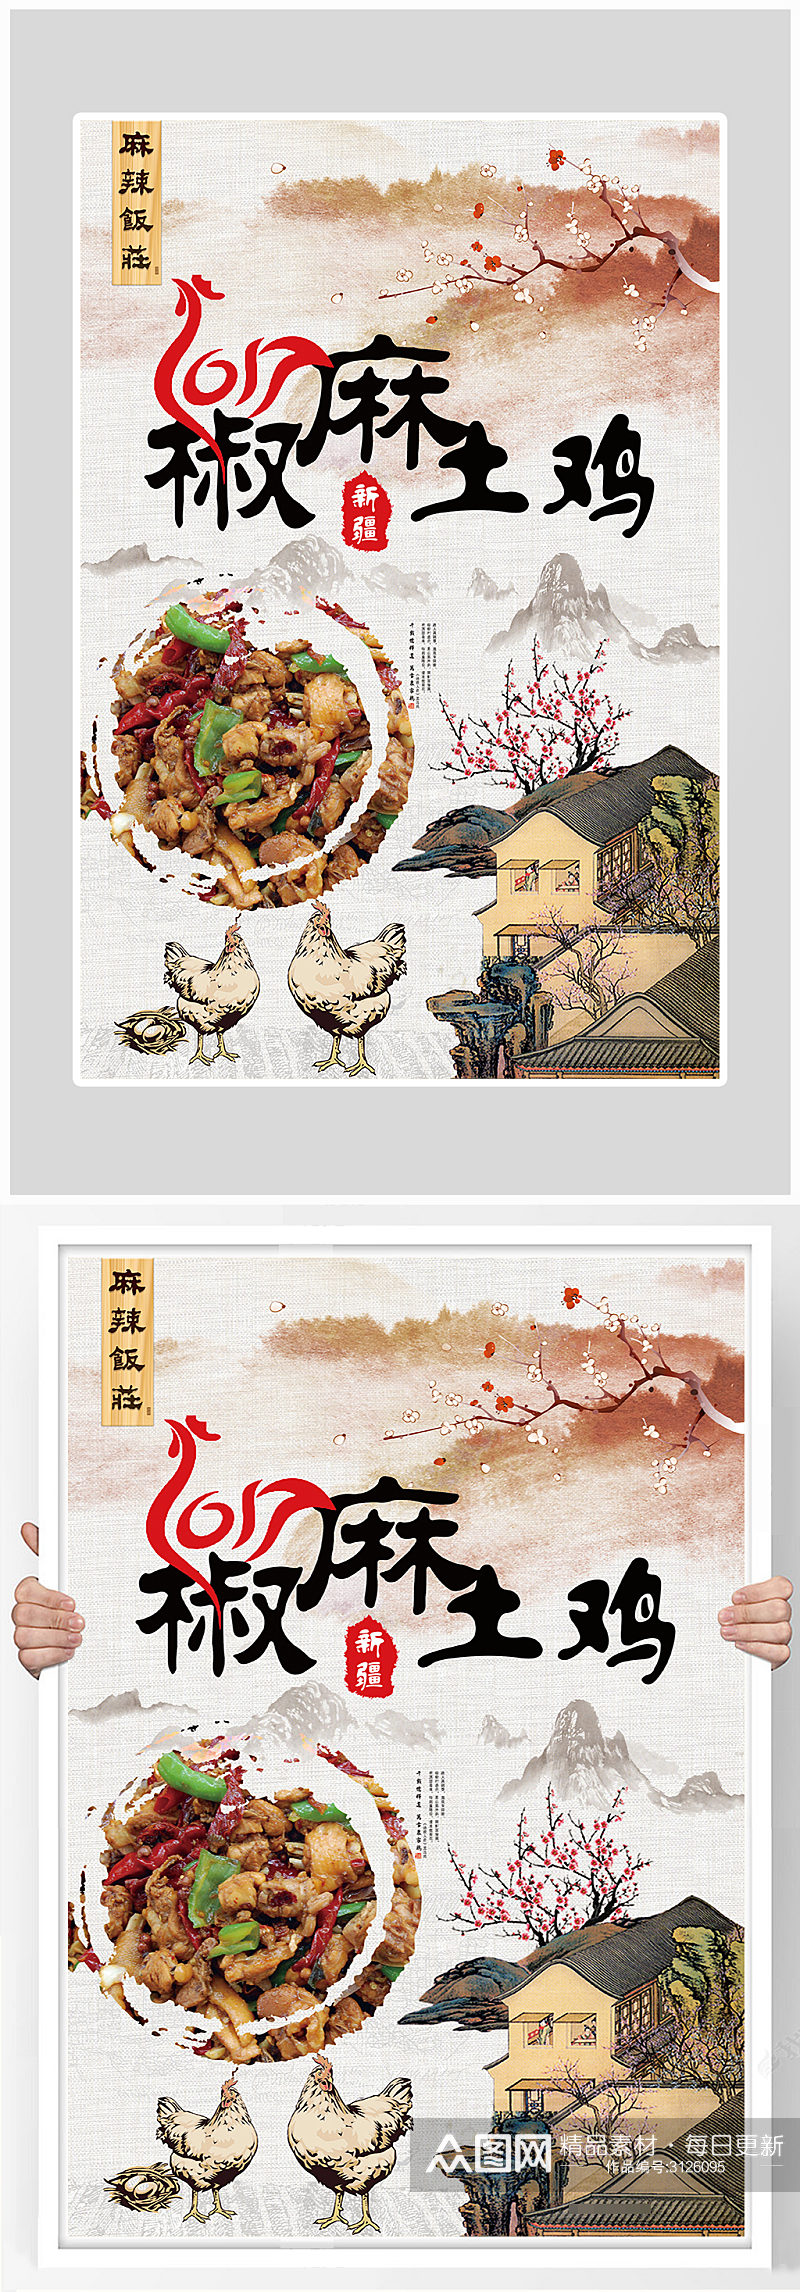 创意古风麻辣土鸡美食海报设计素材